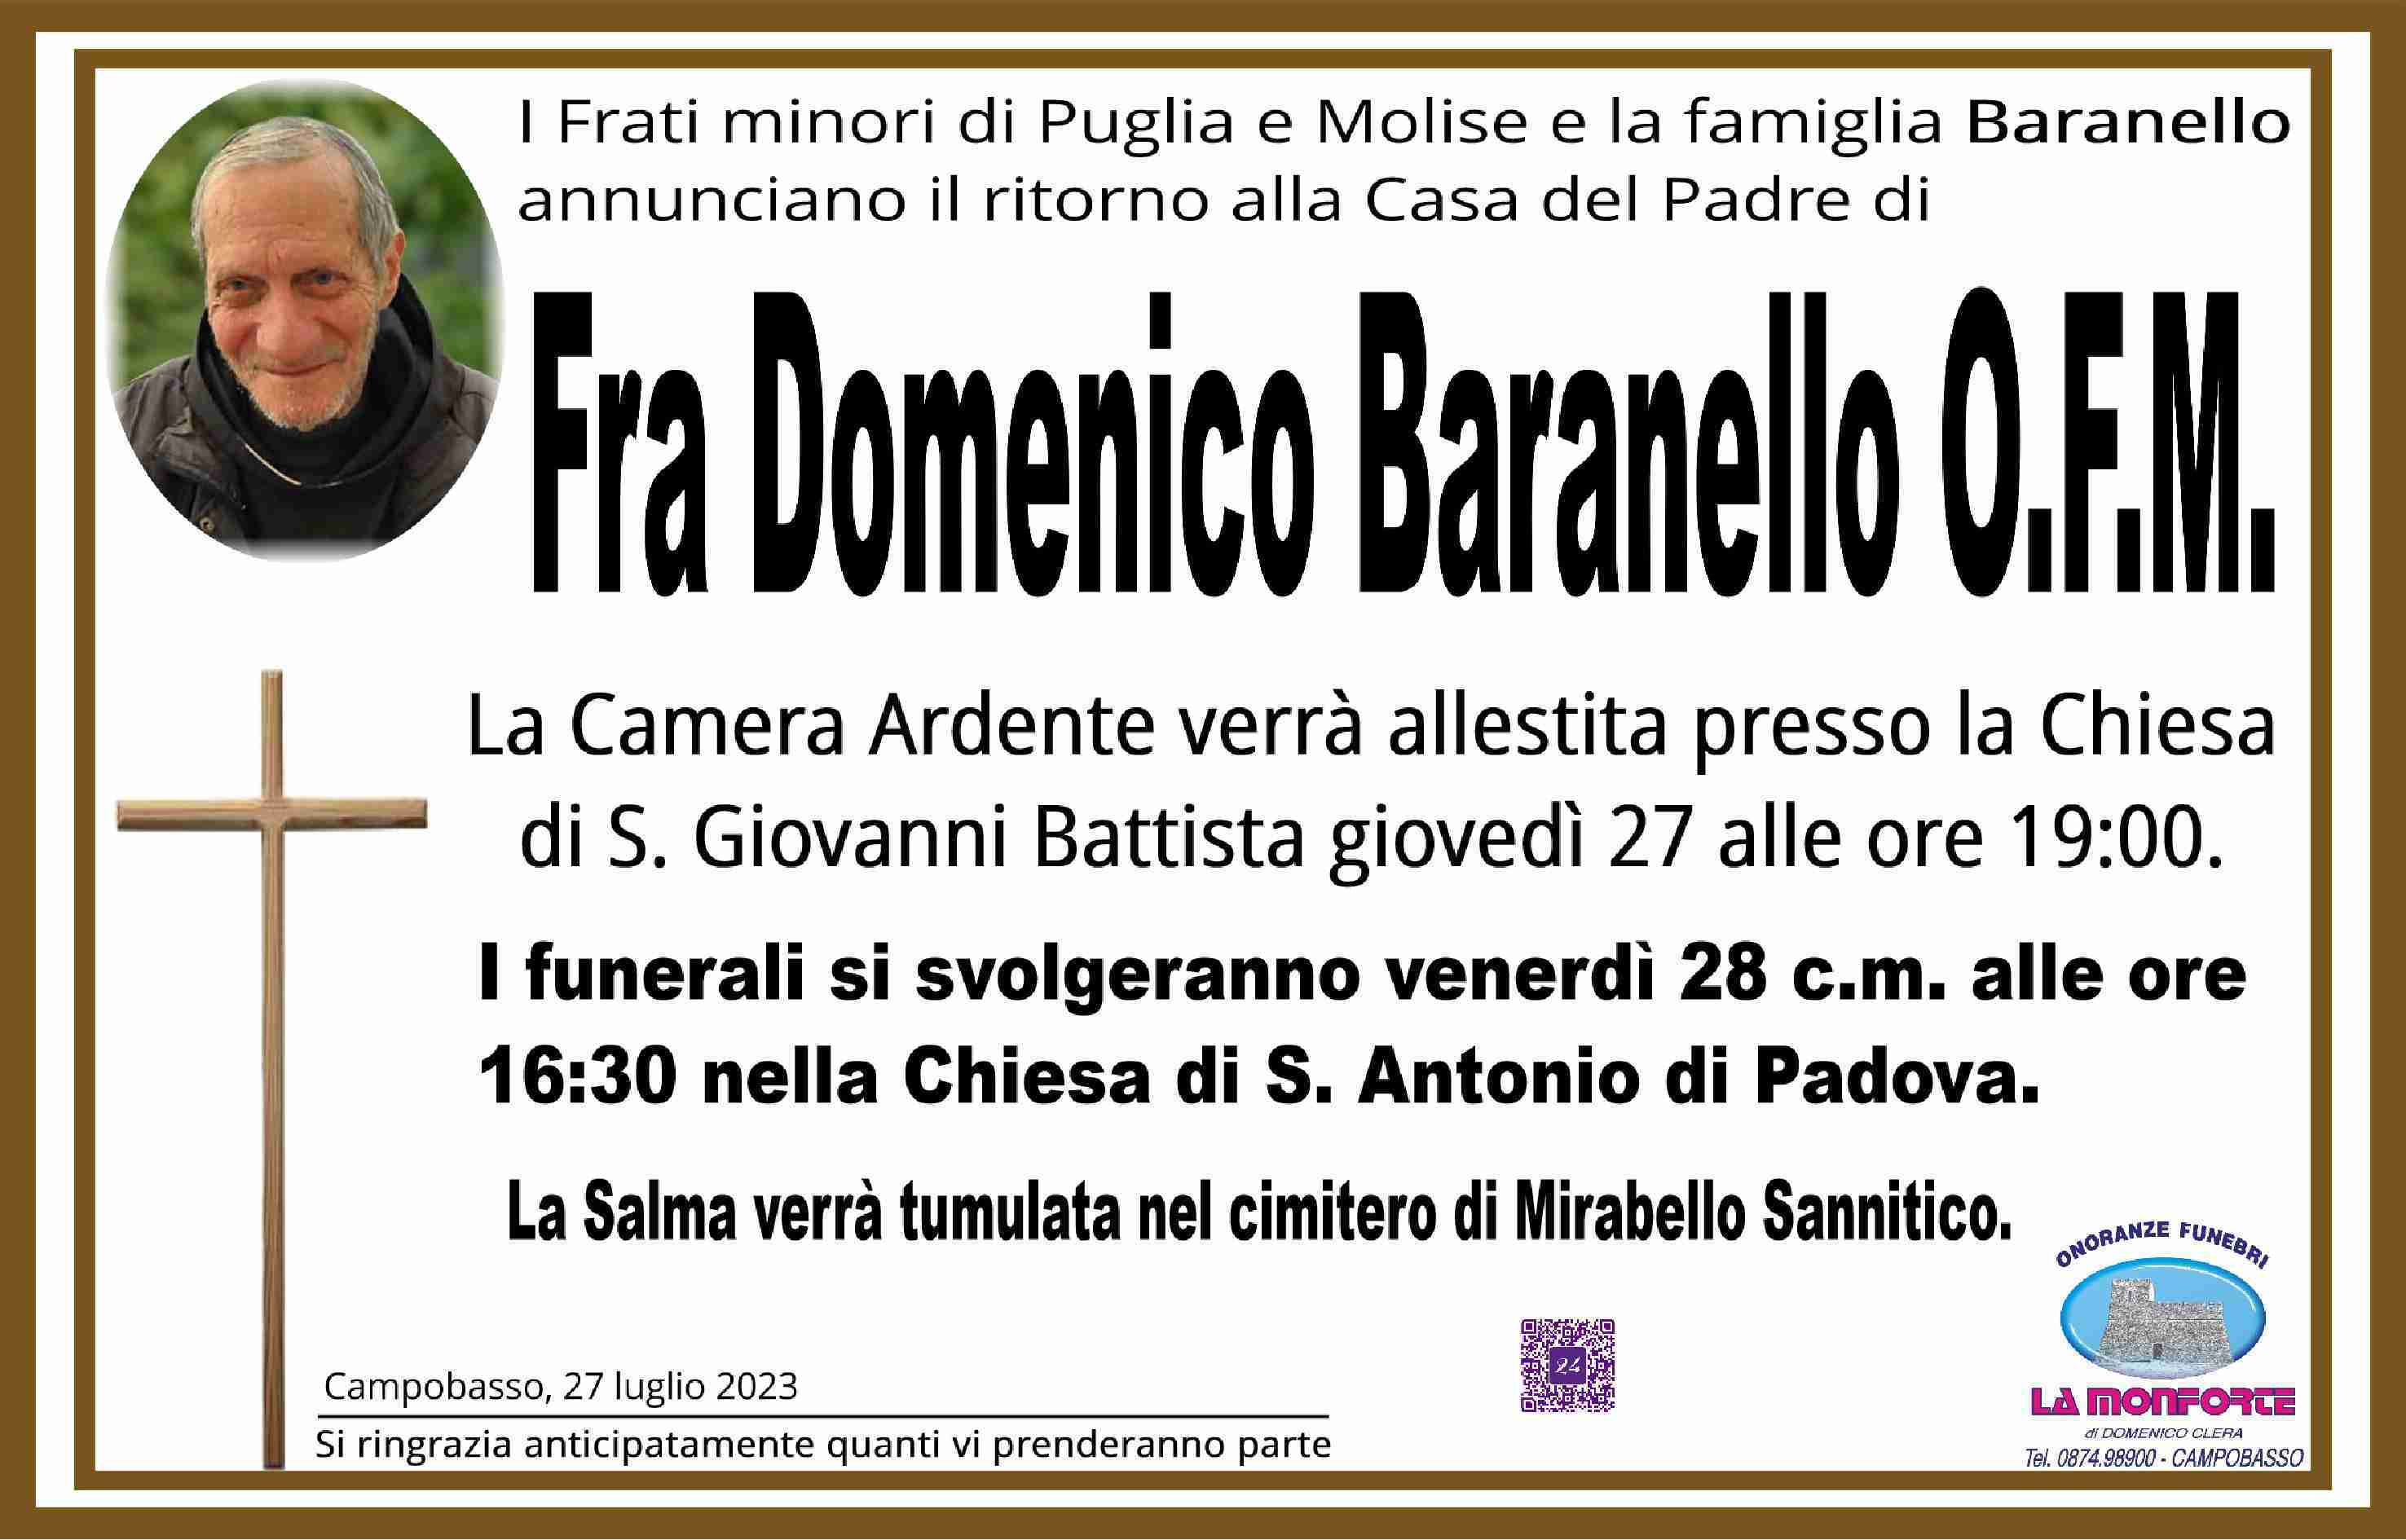 Domenico Baranello